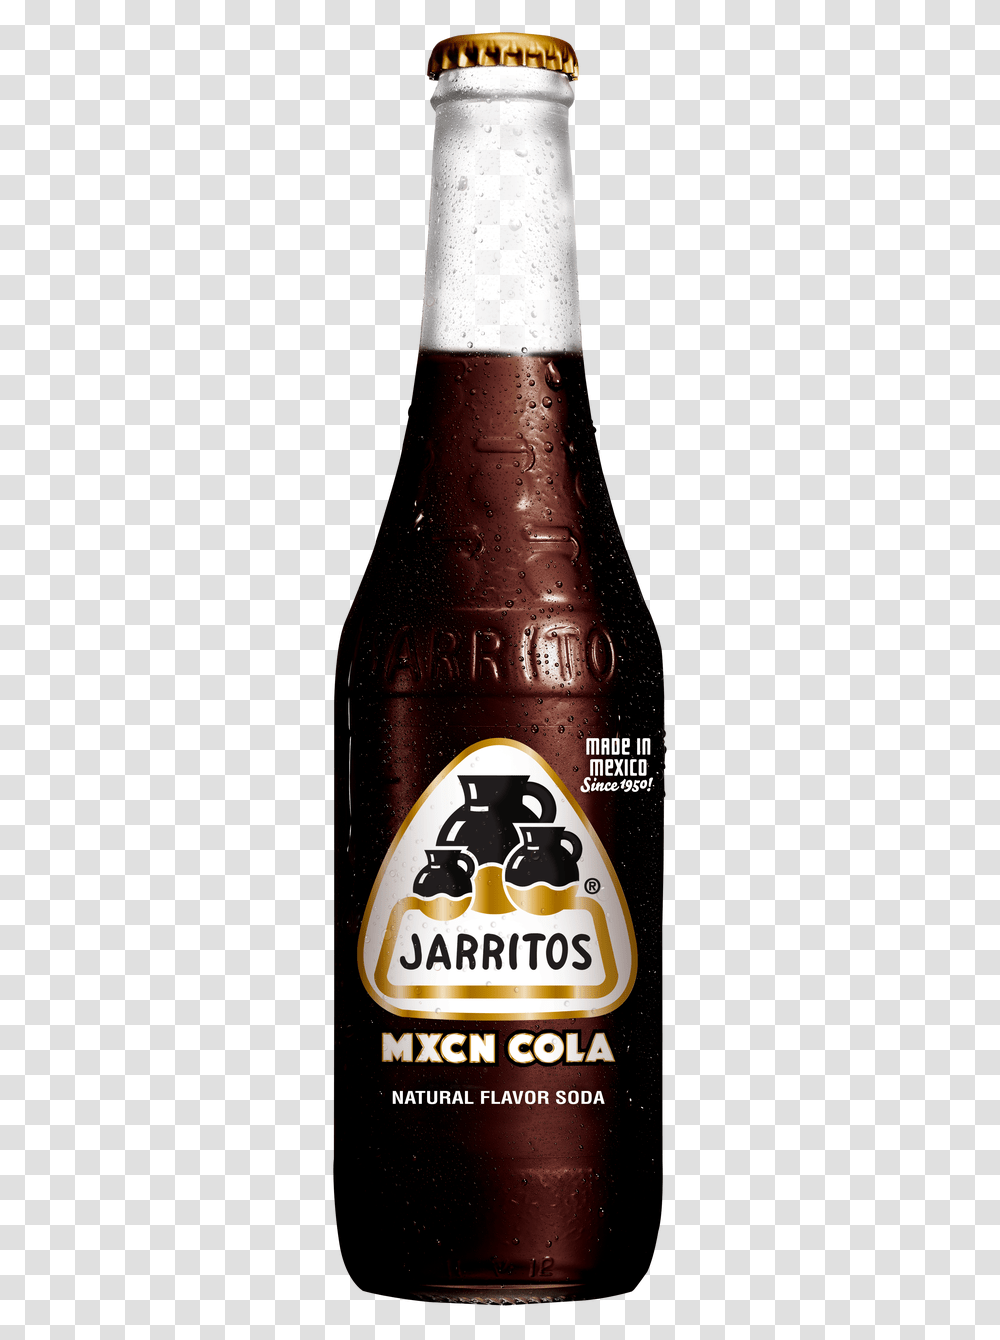 Jarritos Mexican Cola, Beer, Alcohol, Beverage, Bottle Transparent Png